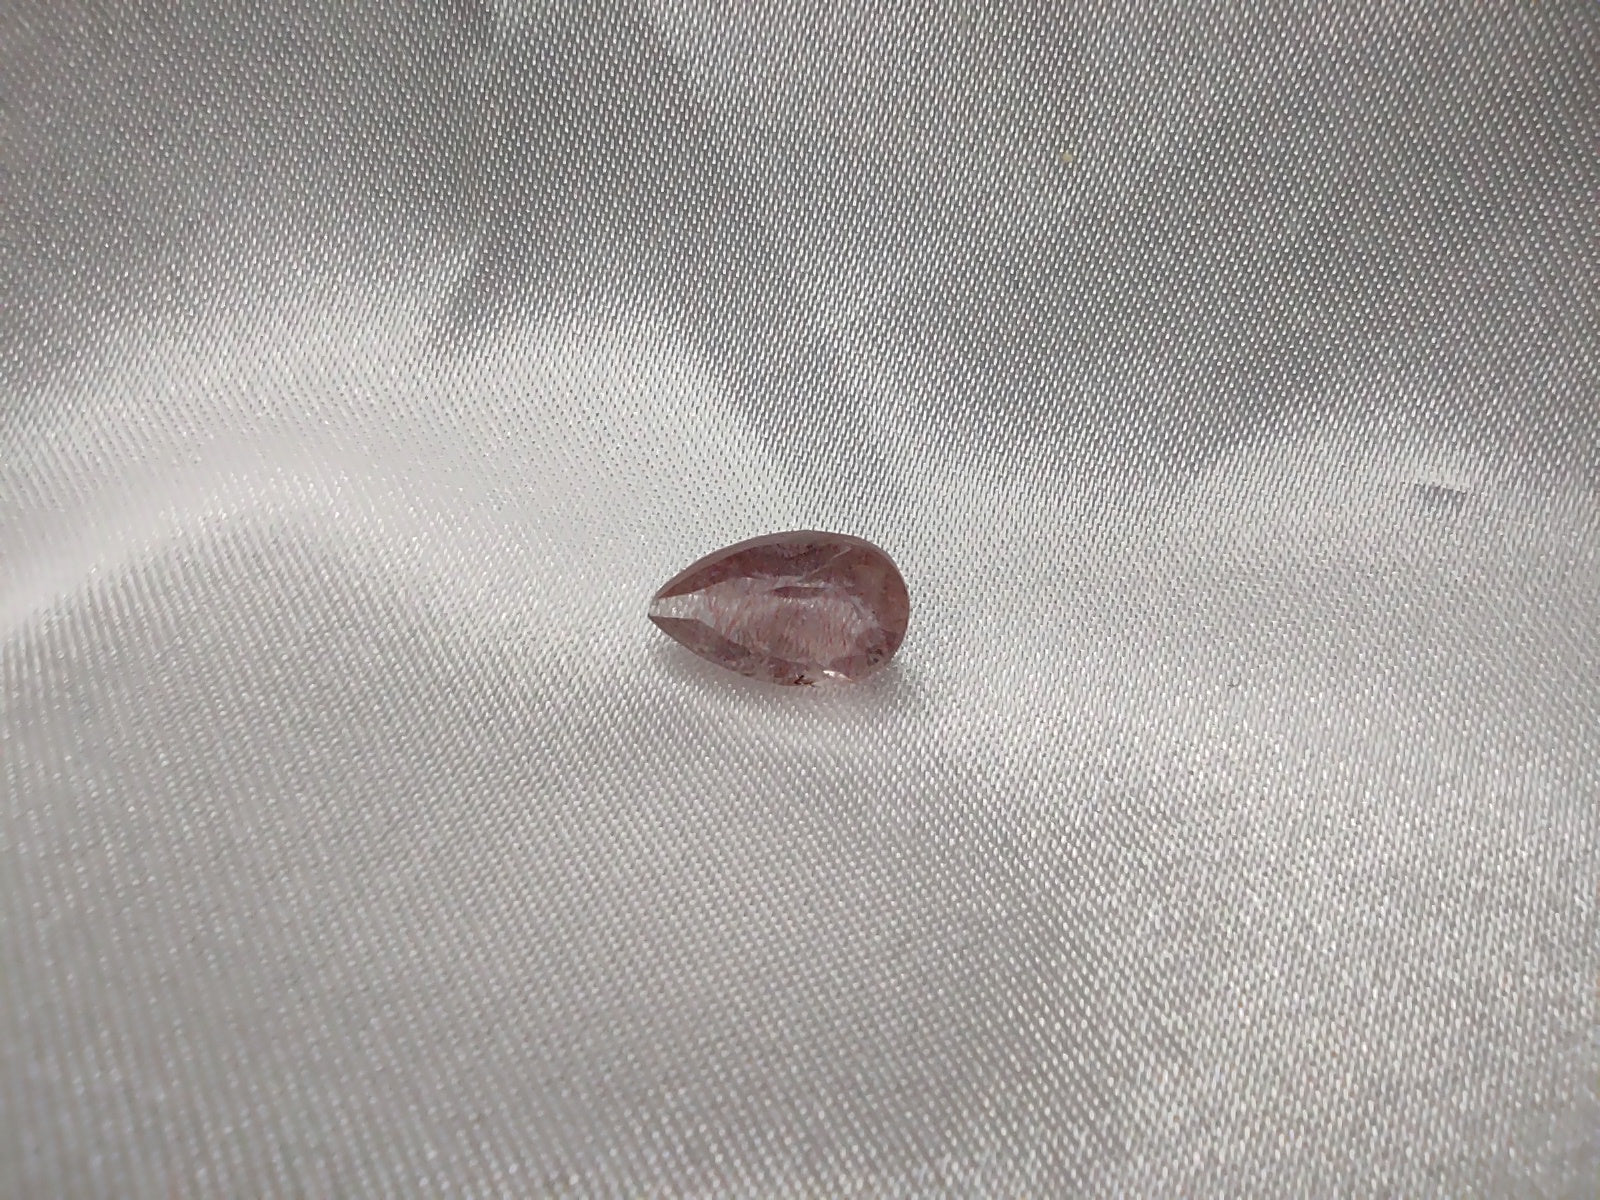 A tear drop cut super seven quartz.